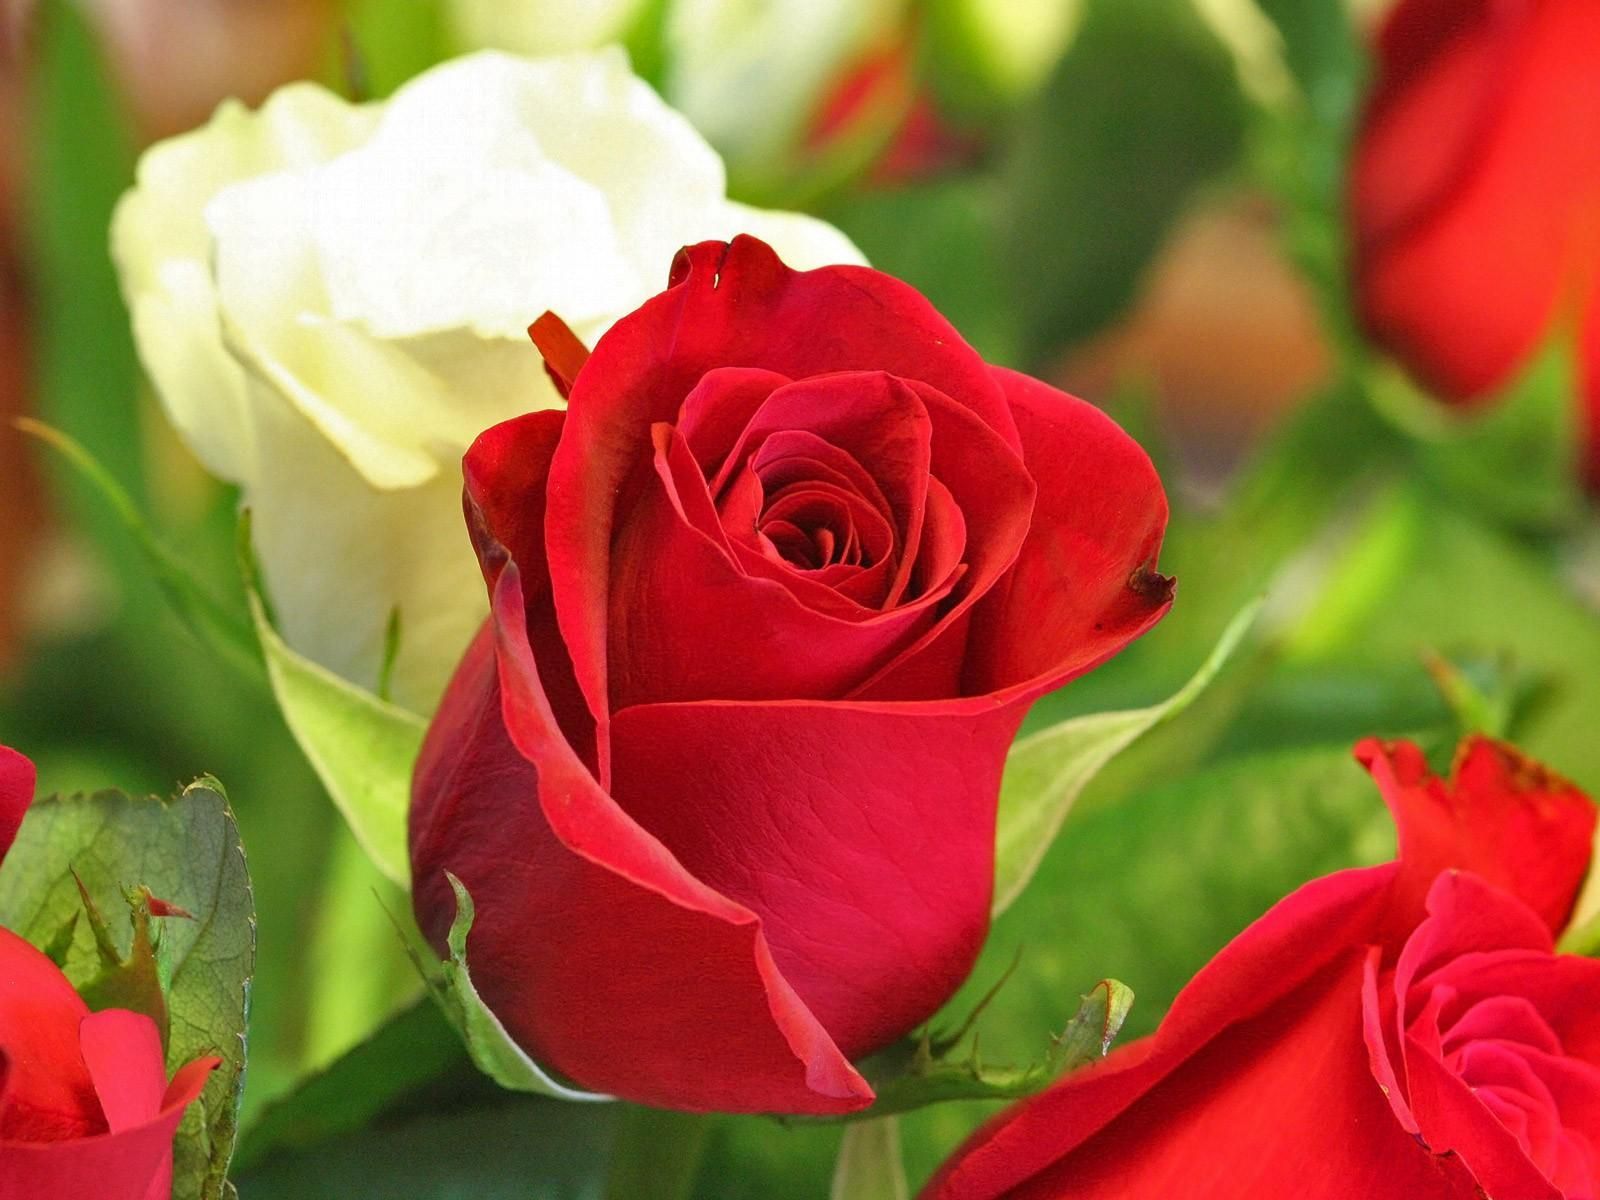 تصویر گل رز قرمز و سفید برای چاپ تابلو با کیفیت 8K